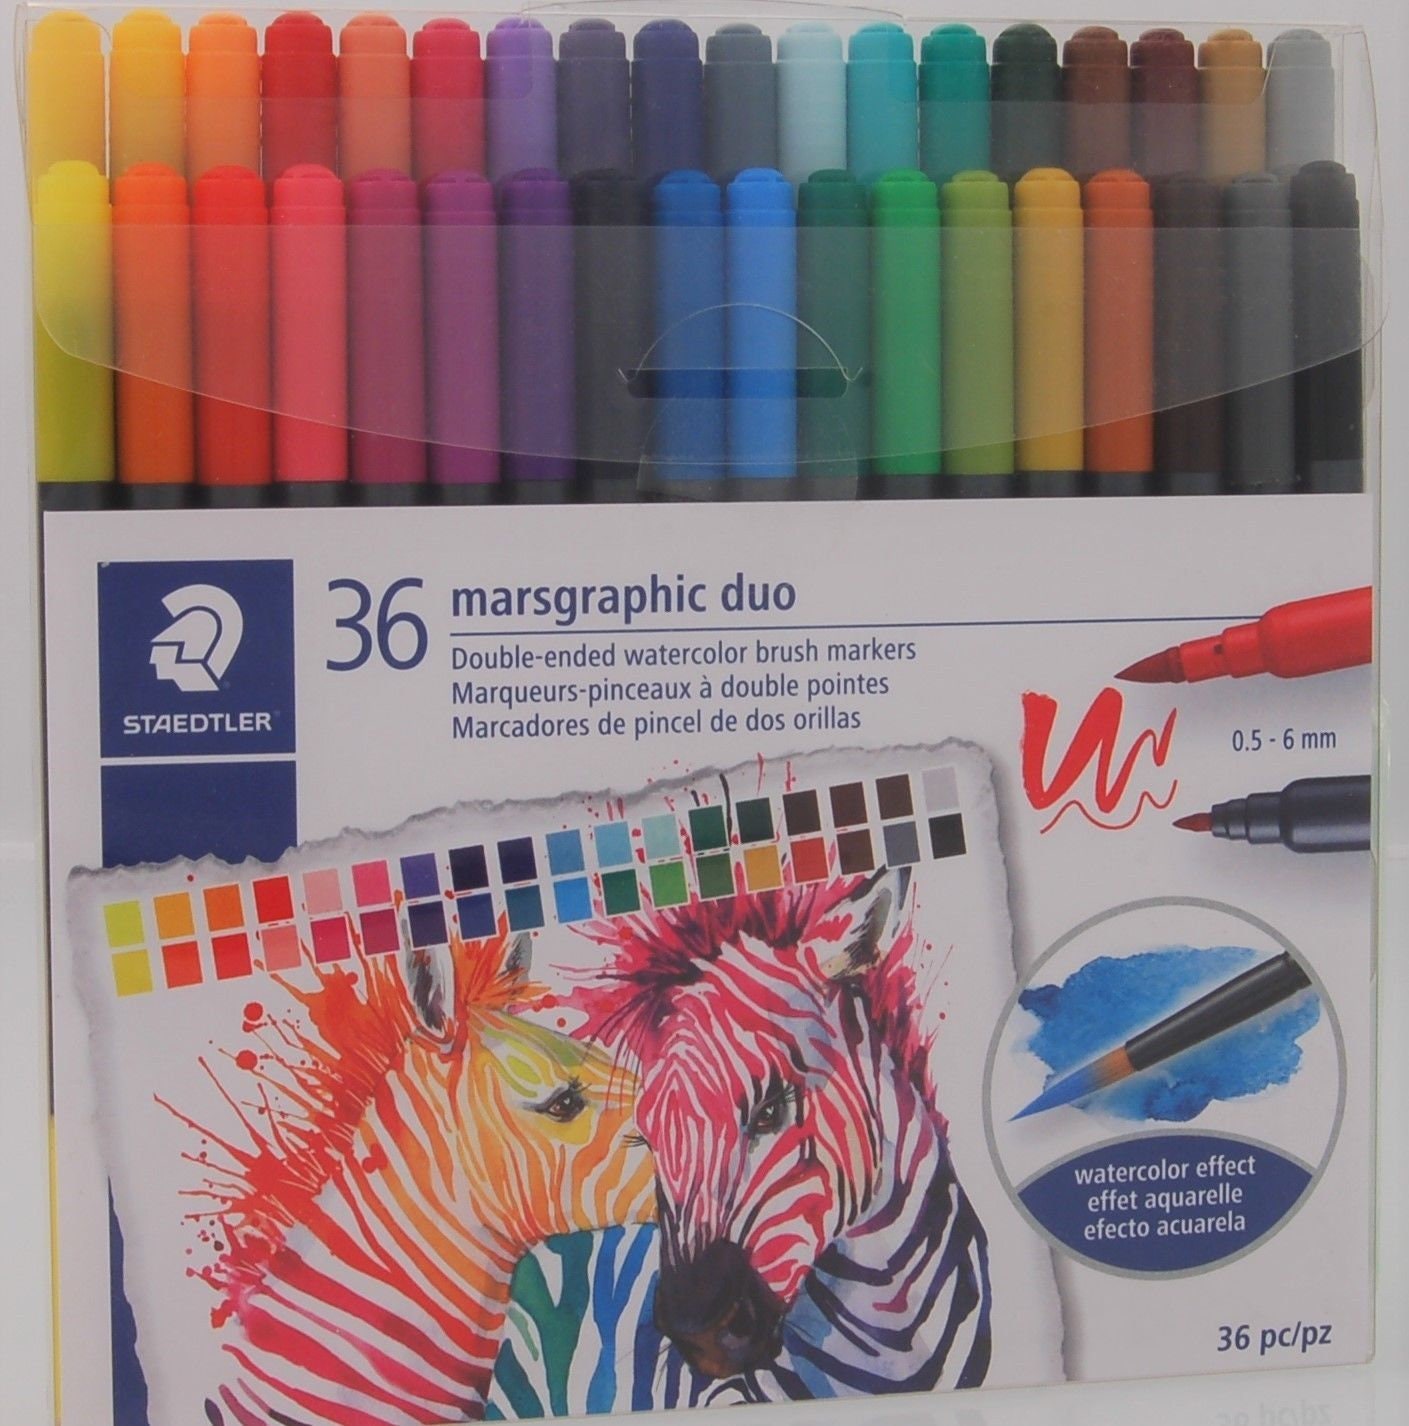 Staedtler Duo Watercolor Brush Pens - 36 Piece Set